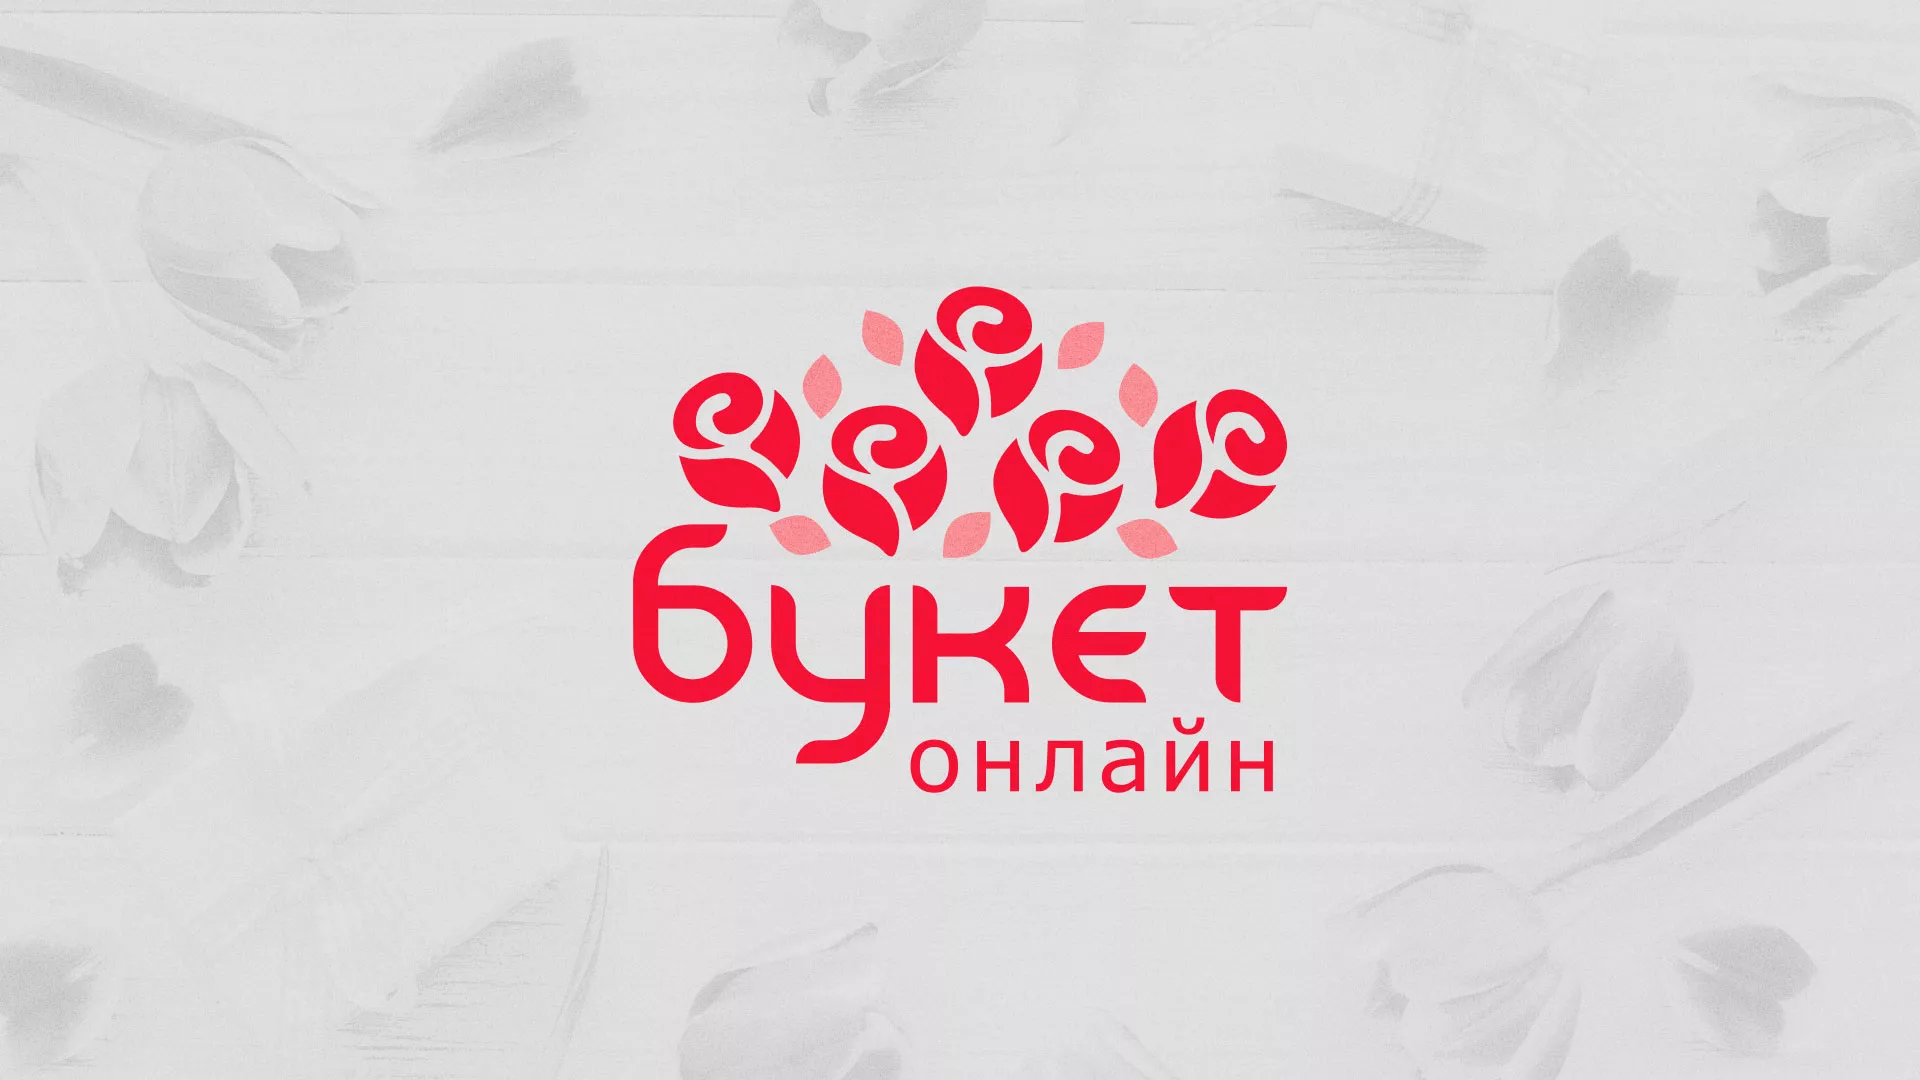 Создание интернет-магазина «Букет-онлайн» по цветам в Чкаловске